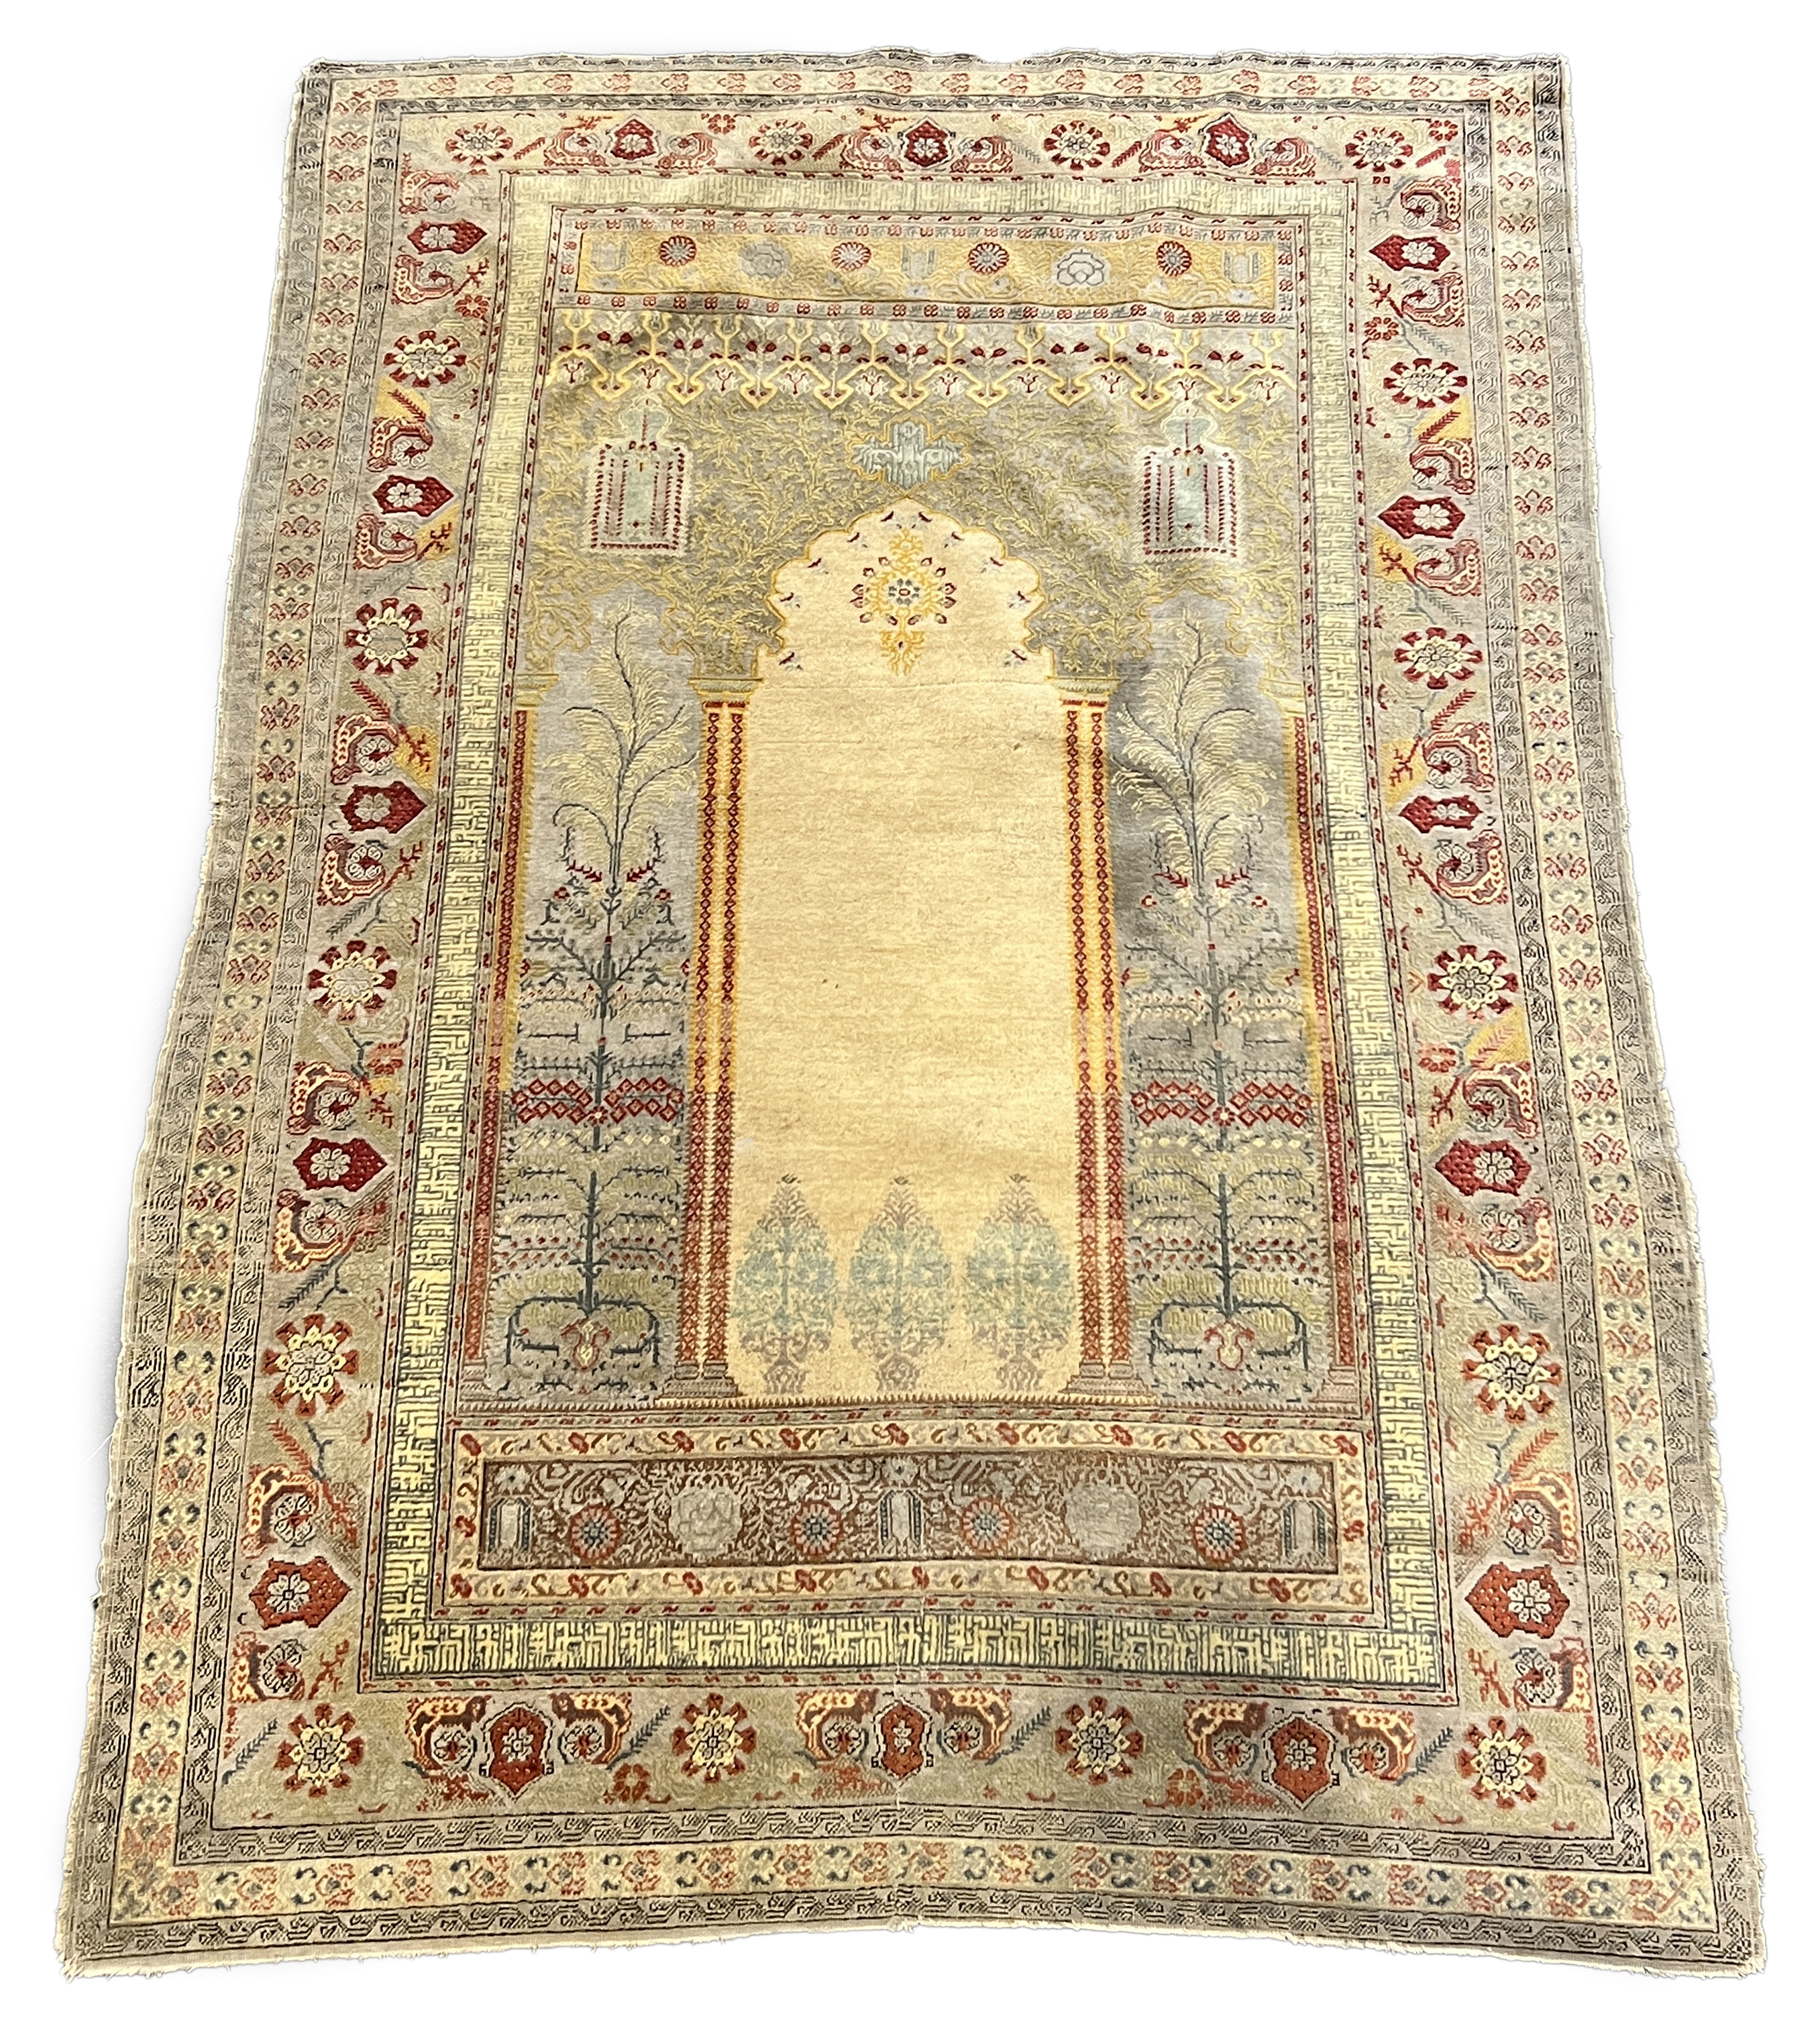 A Turkish silk prayer rug, 205 x 122cm